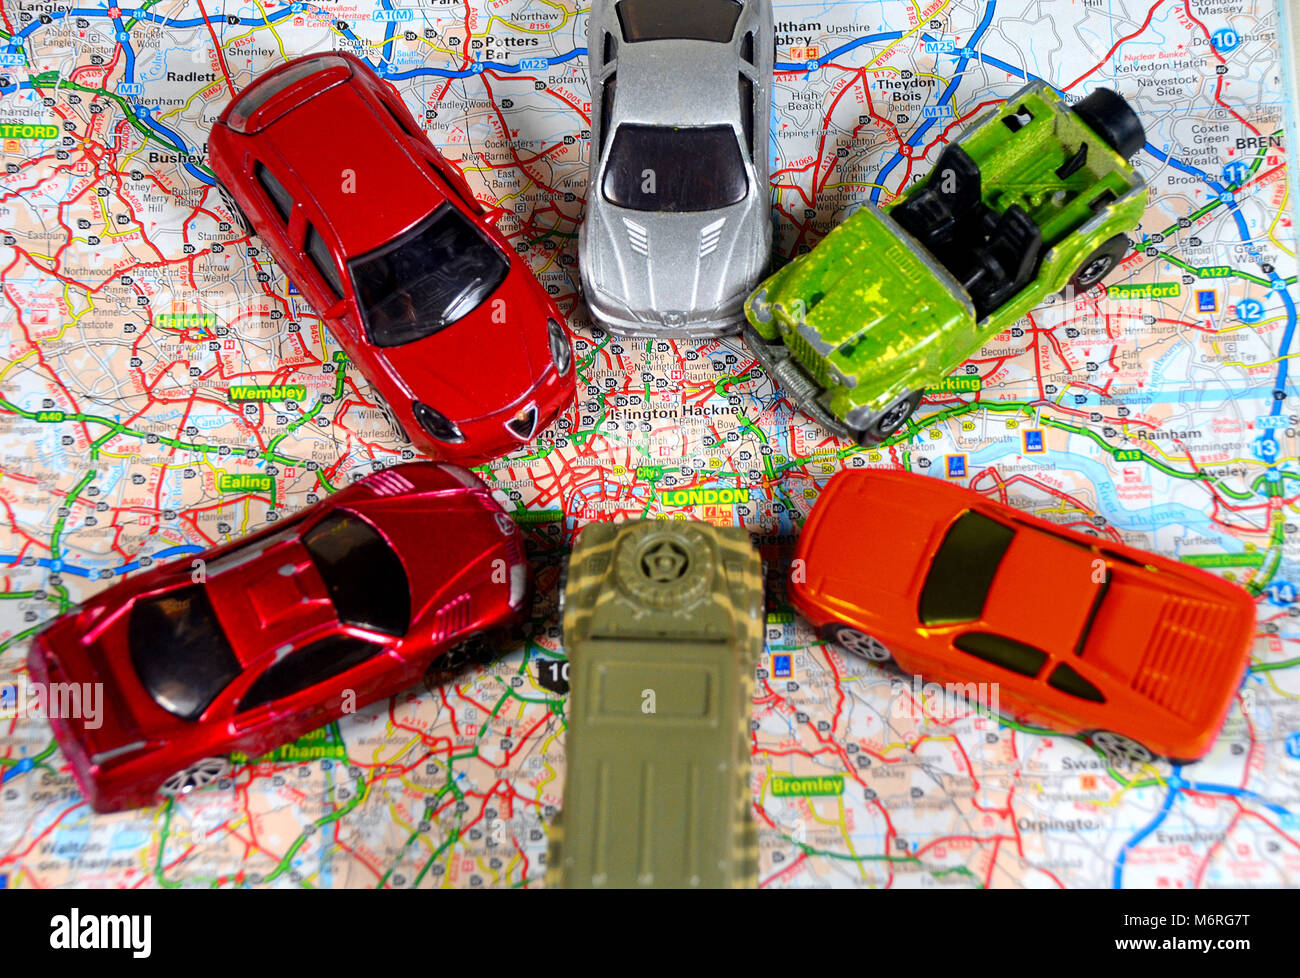 Concept de trafic entrant dans Londres à partir de toutes les directions - à l'aide de petites voitures et d'une carte routière de la Grande-Bretagne. Banque D'Images